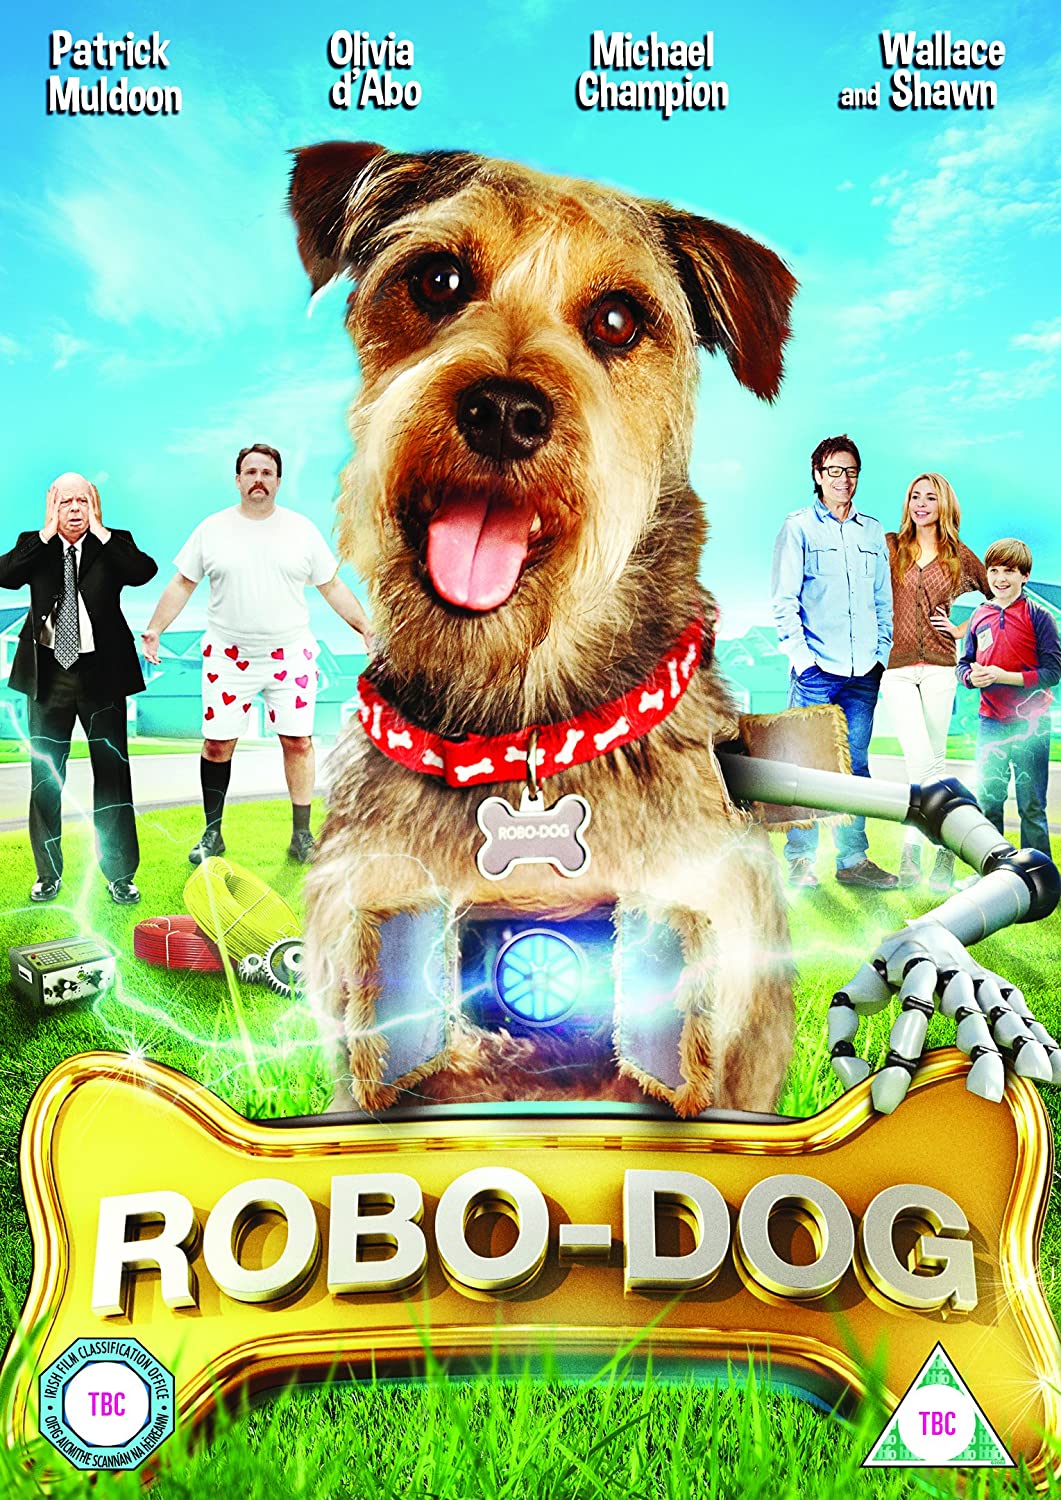 Robo-Dog - Family/Drama [DVD]